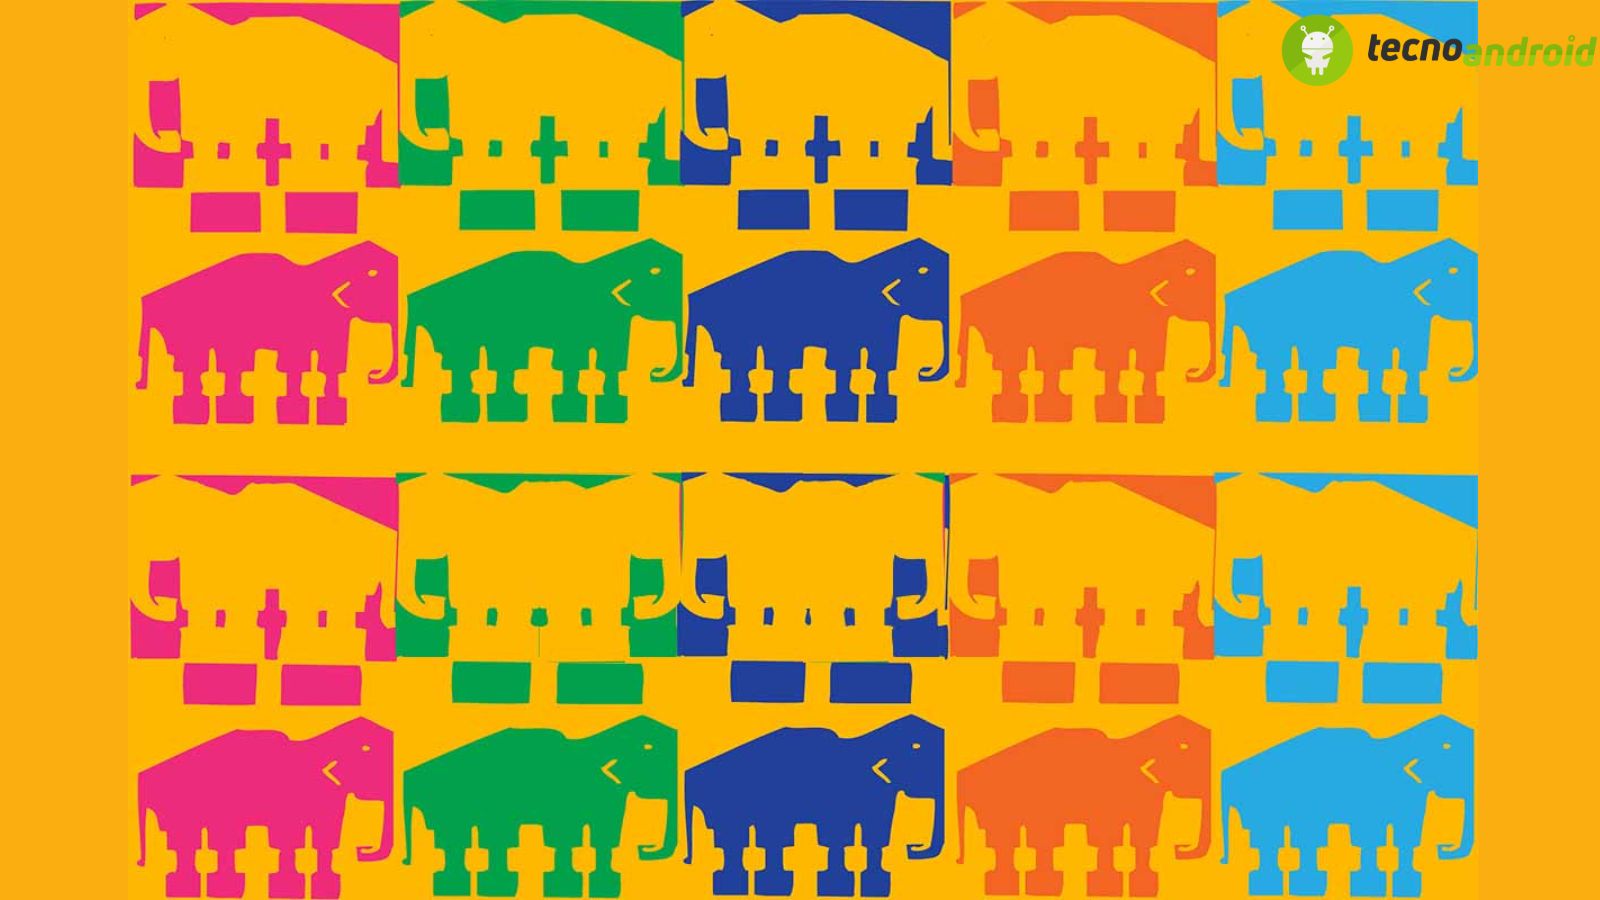 Quanti elefanti ci sono in questa illusione ottica? 